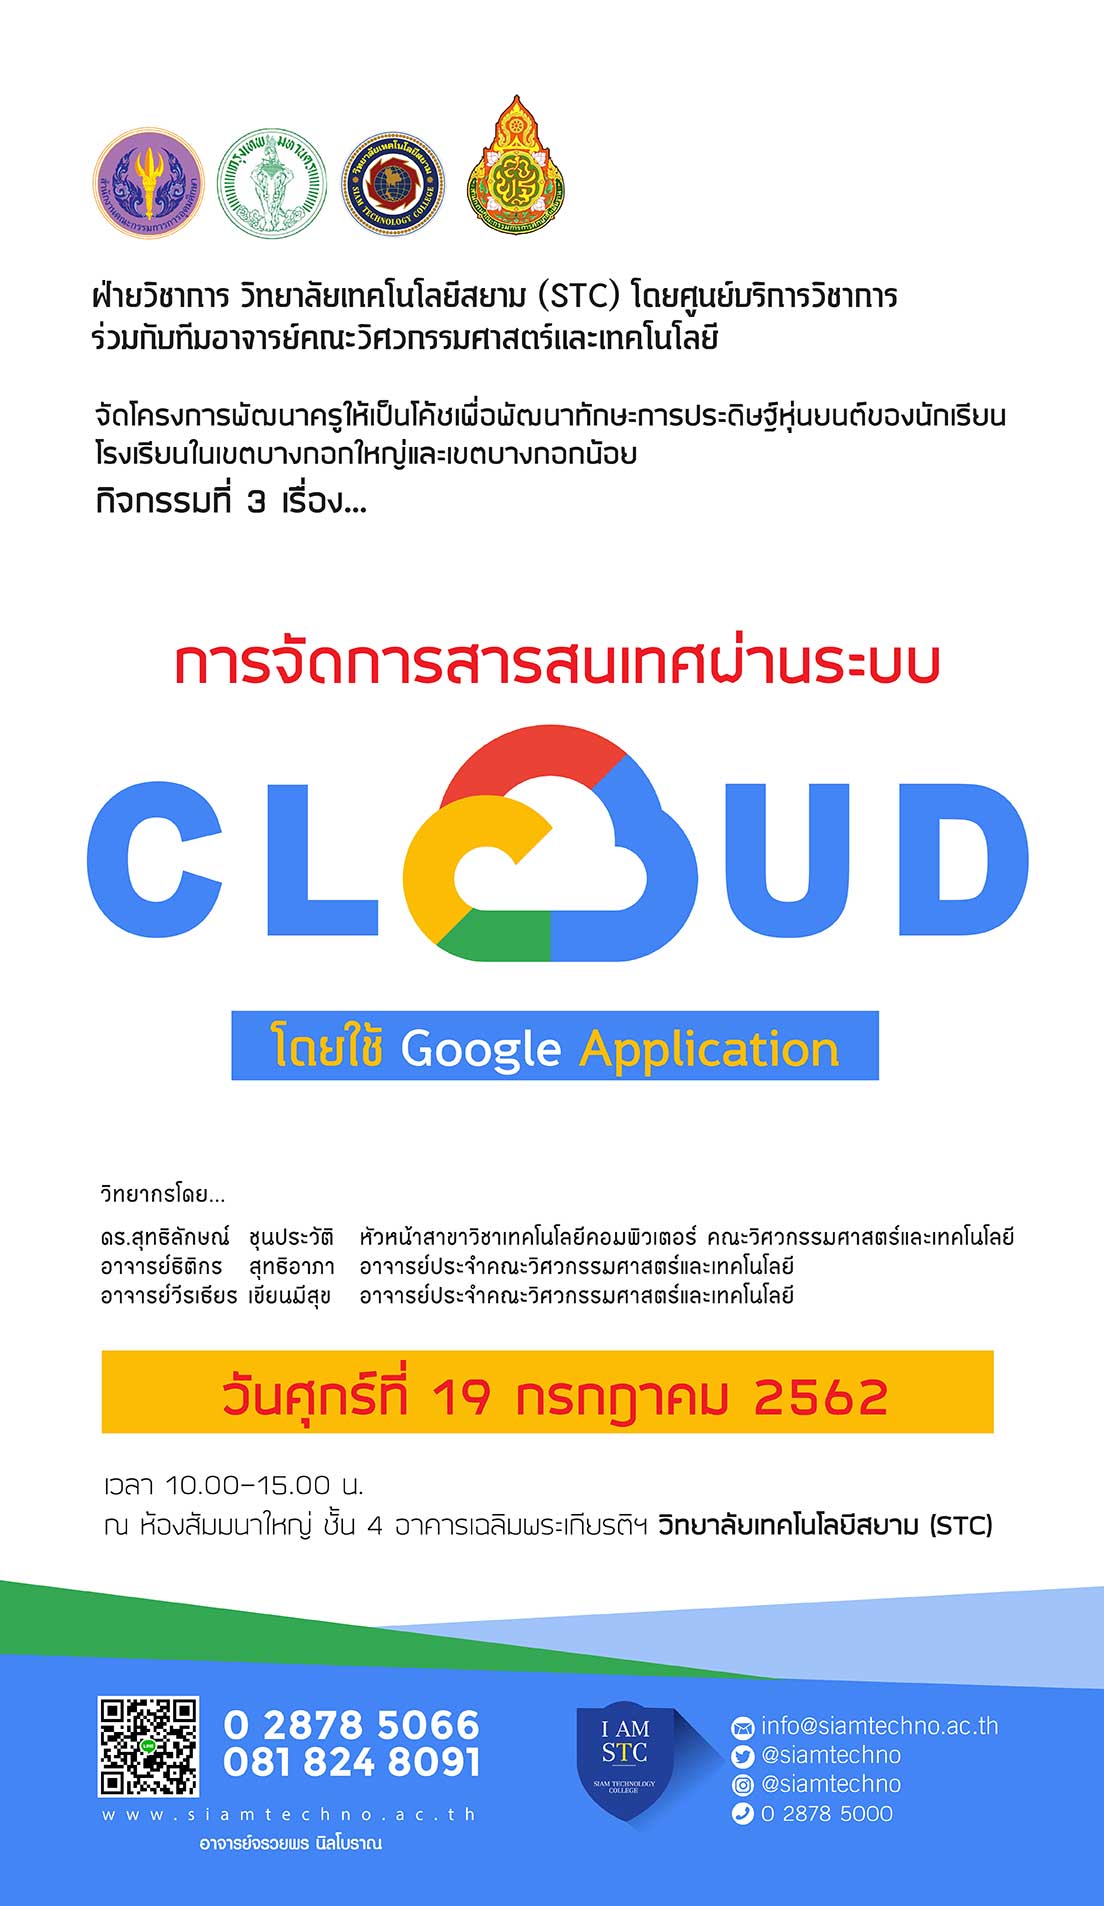 ศูนย์บริการวิชาการ วิทยาลัยเทคโนโลยีสยาม กับ การจัดการสารสนเทศผ่านระบบ Cloud โดยใช้ Google Application 